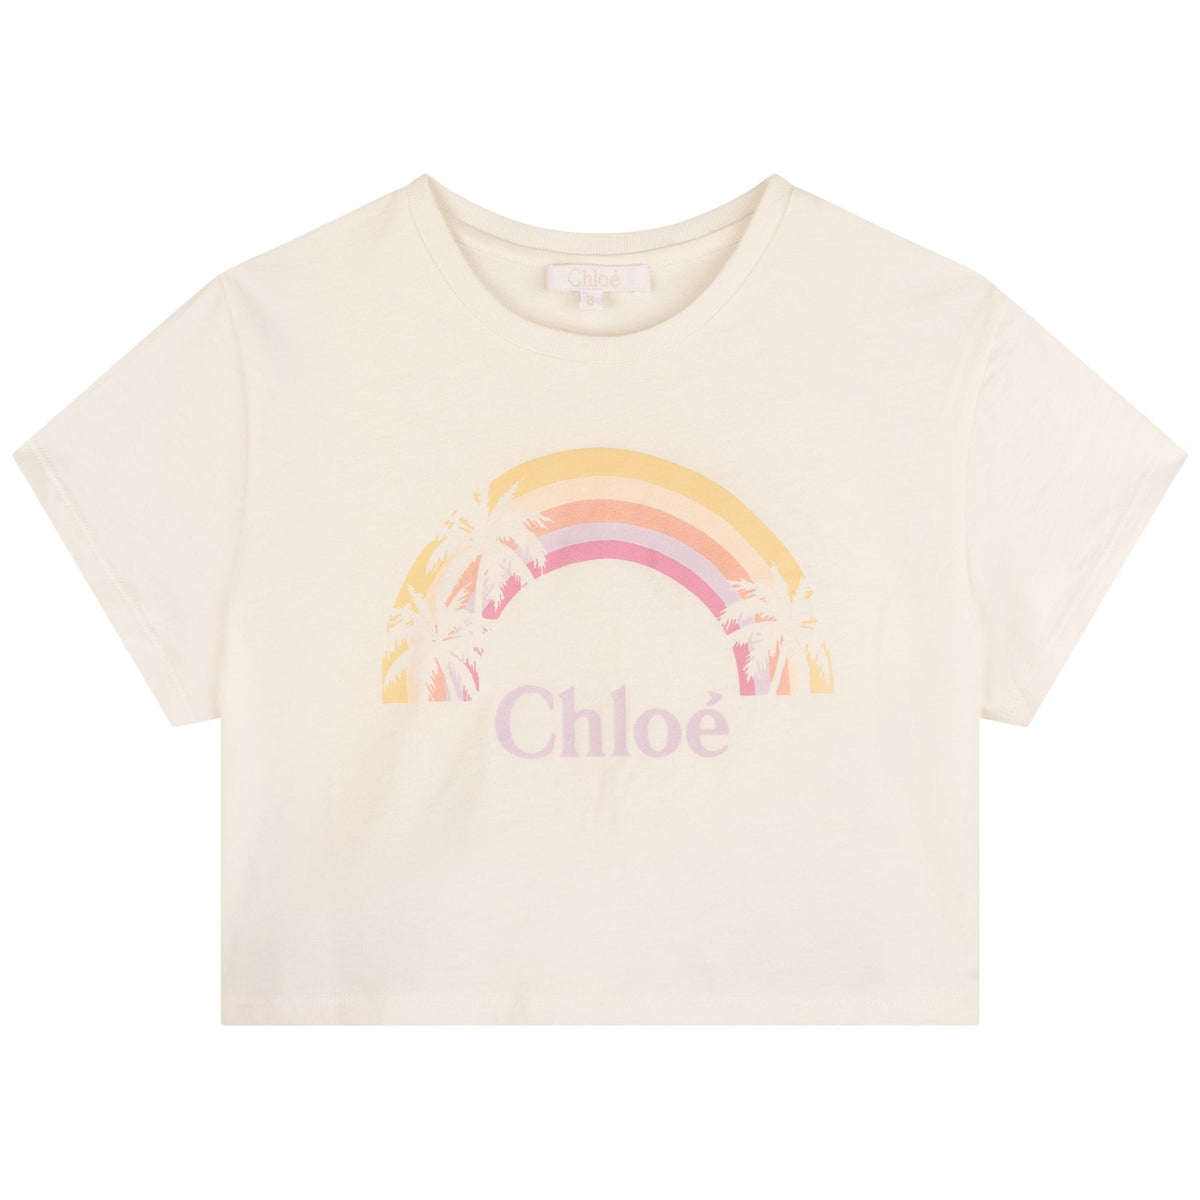 Chloe Girls Rainbow T-Shirt